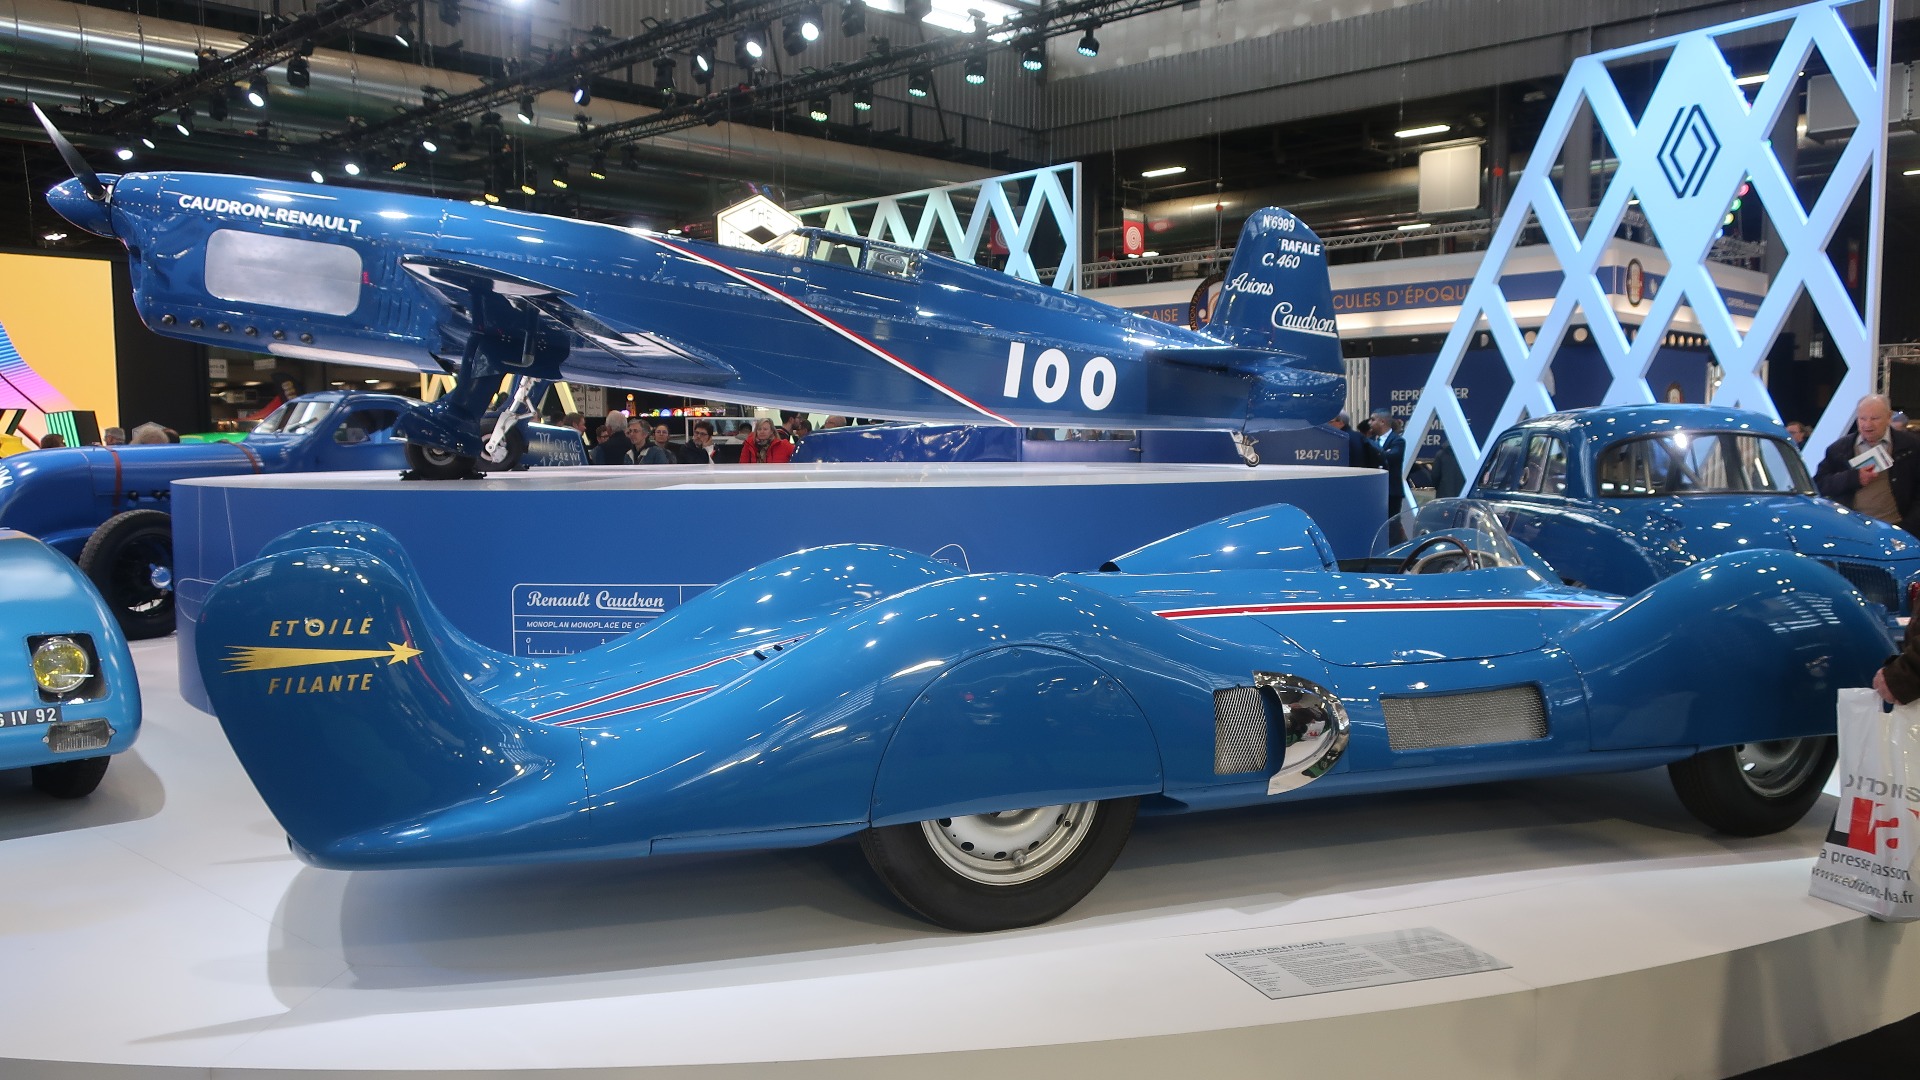 Fra Renaults mesterstand. Bilen er Etoile Filante med gassturbin som kjørte 308 kmt på Bonneville i 1956. Flyet er en rekreasjon av Caudron-Renault Rafale C.460 som satte fartsrekorder i 1934.